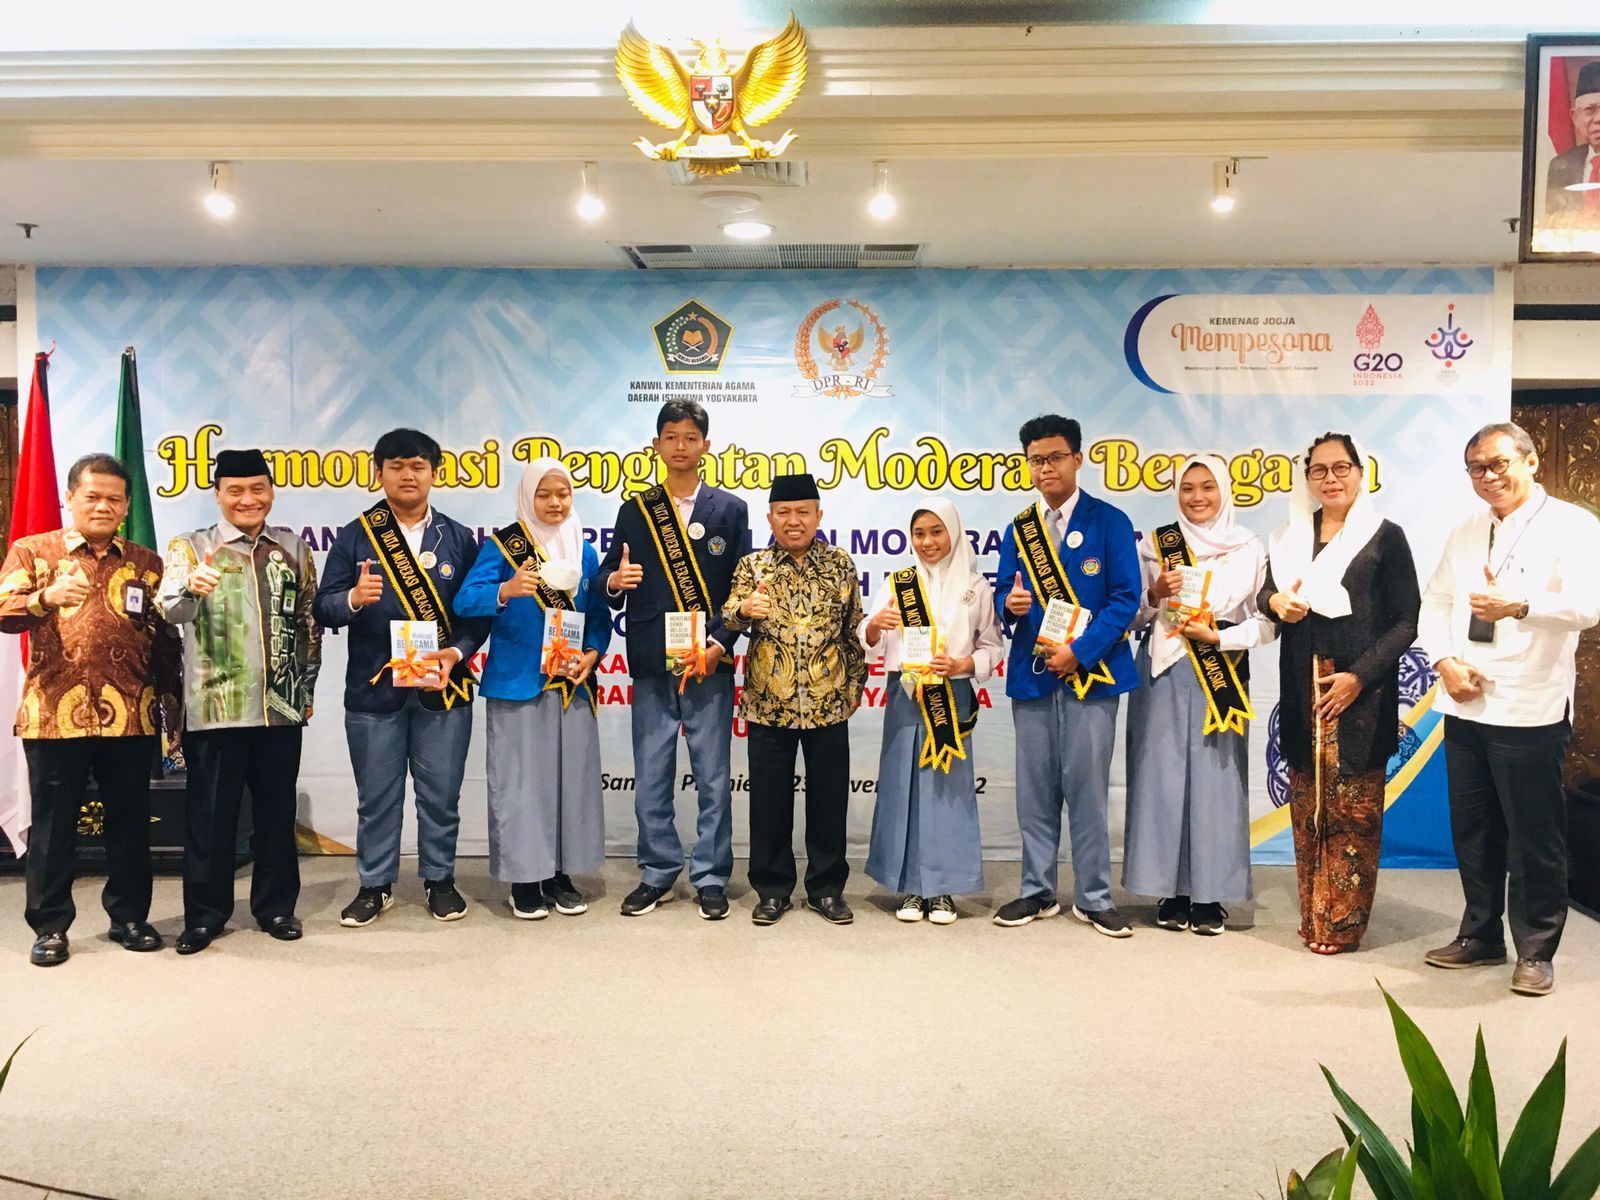 Kemenag Luncurkan Enam Sekolah Percontohan Moderasi Beragama di Yogyakarta